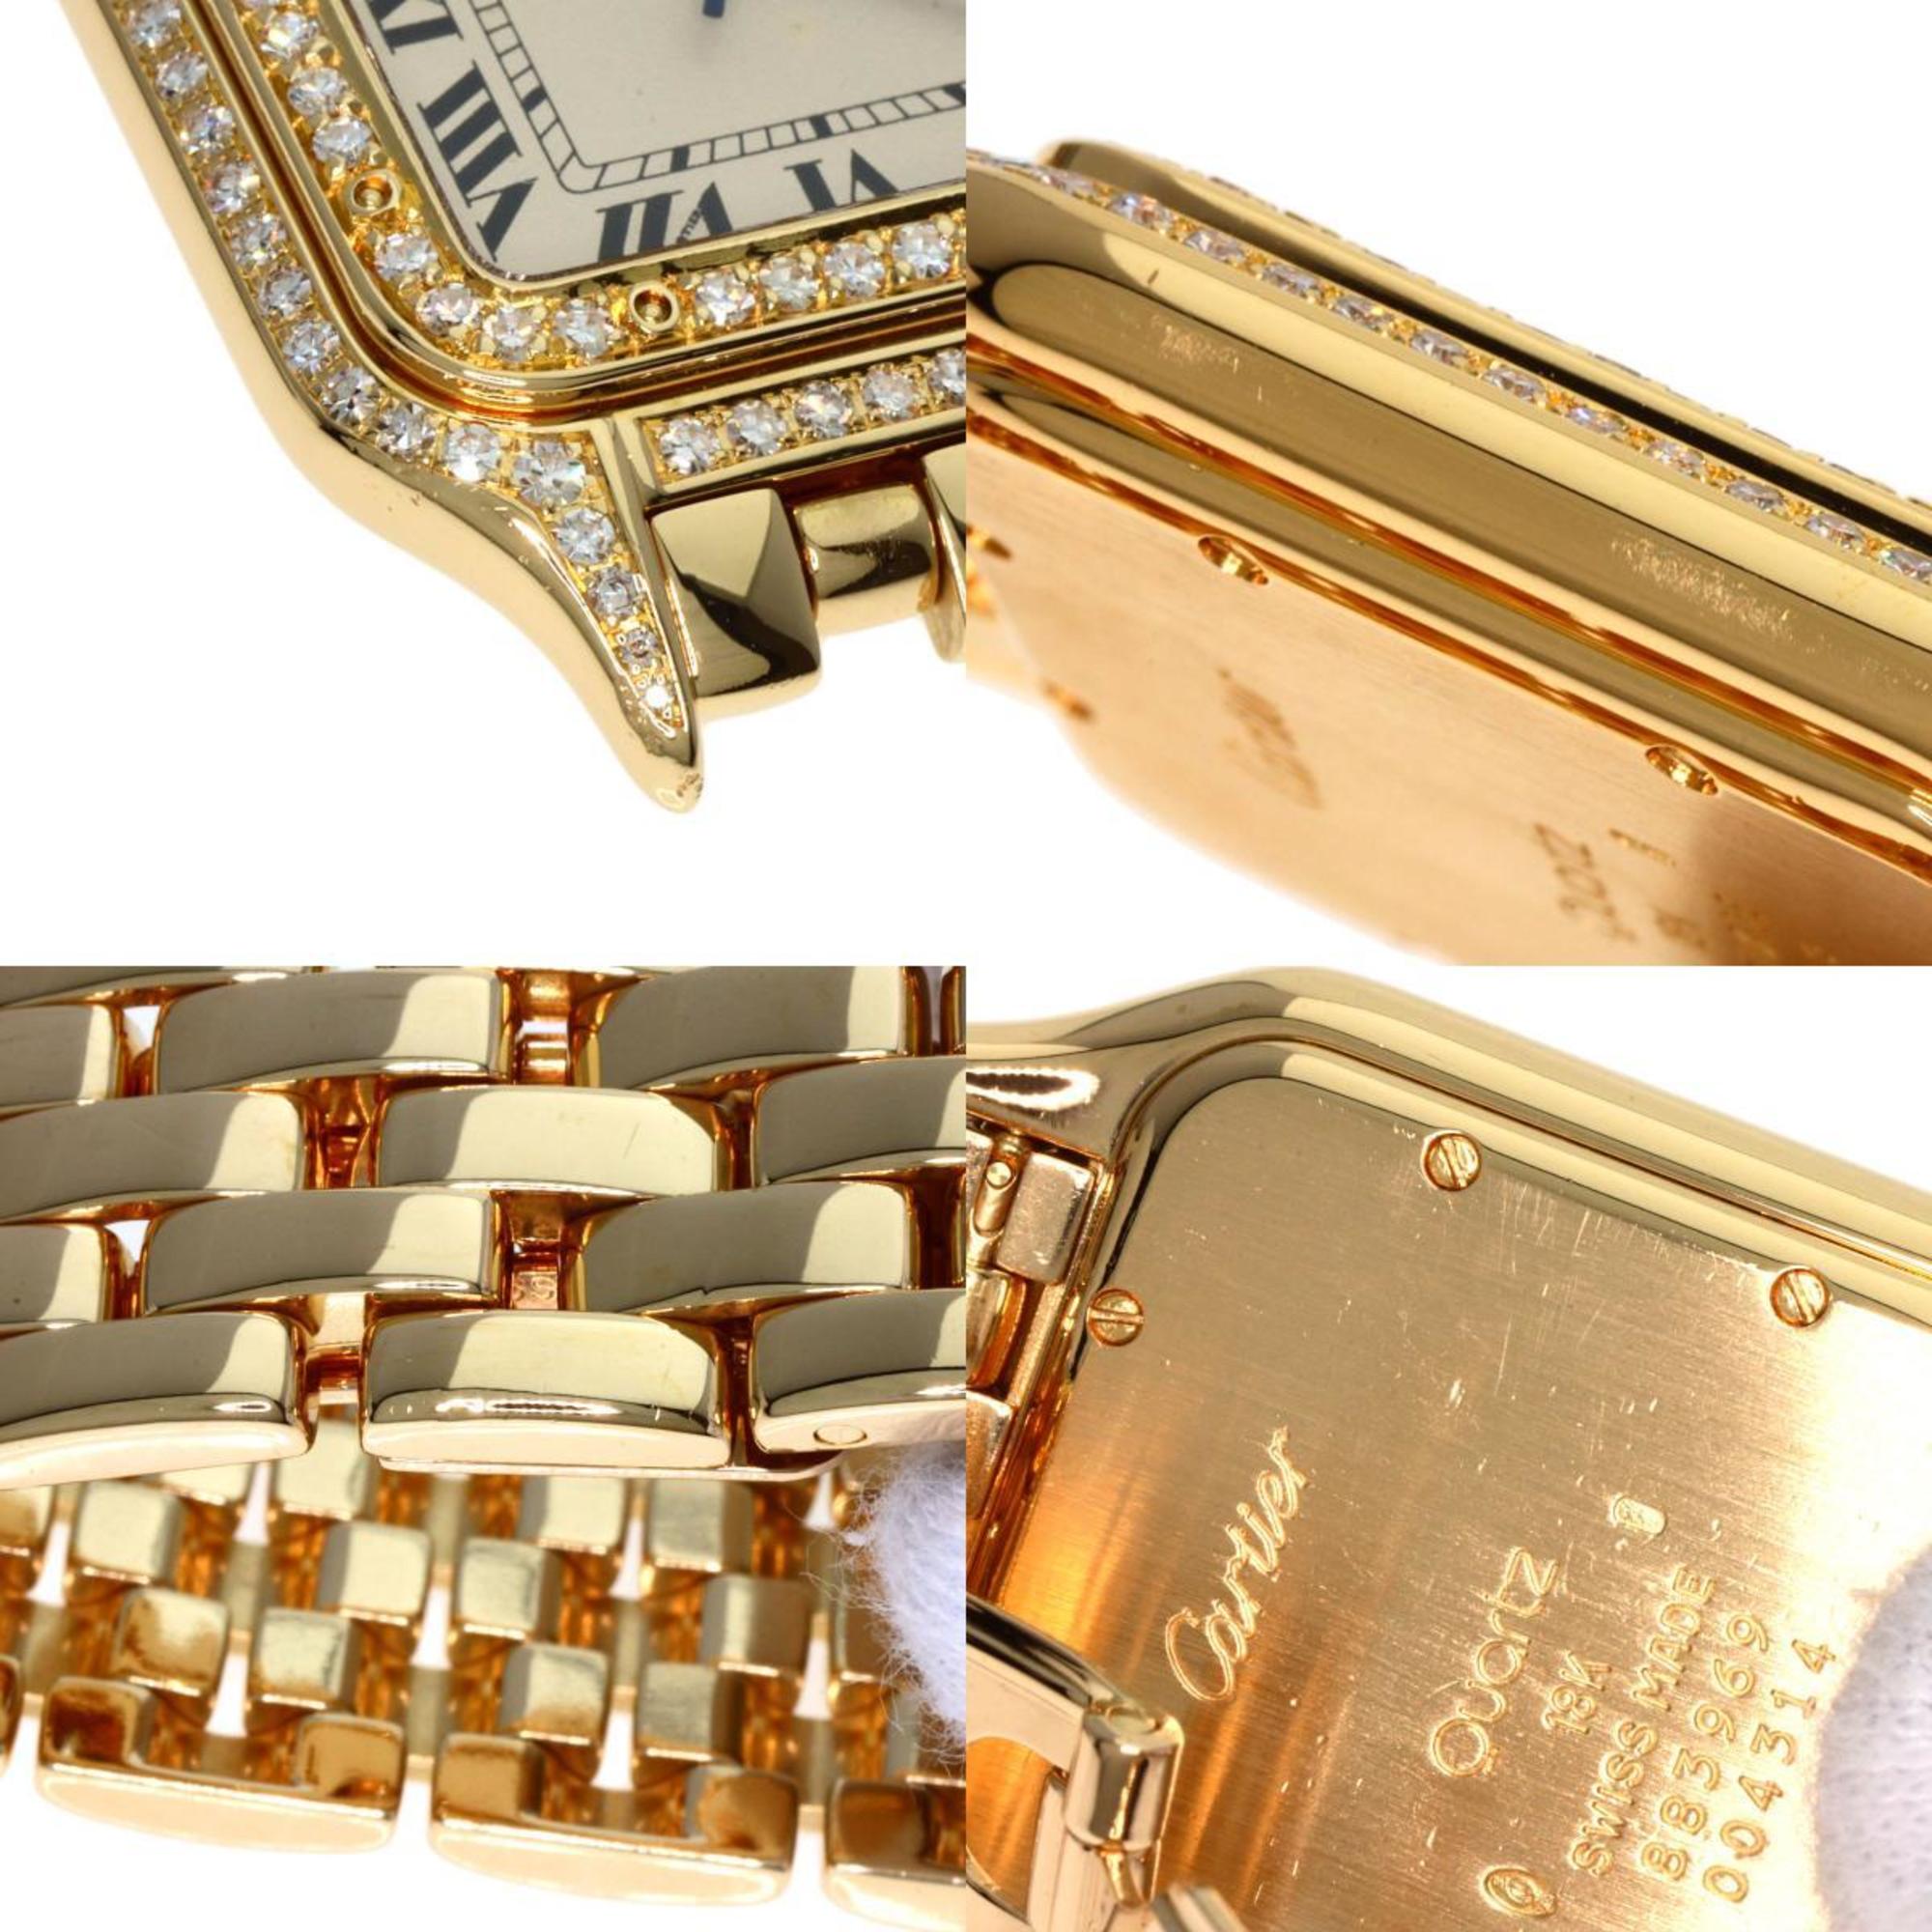 Cartier Panthere MM Double Bezel Diamond Manufacturer Complete Wristwatch K18 Yellow Gold/K18YG/Diamond Boys CARTIER